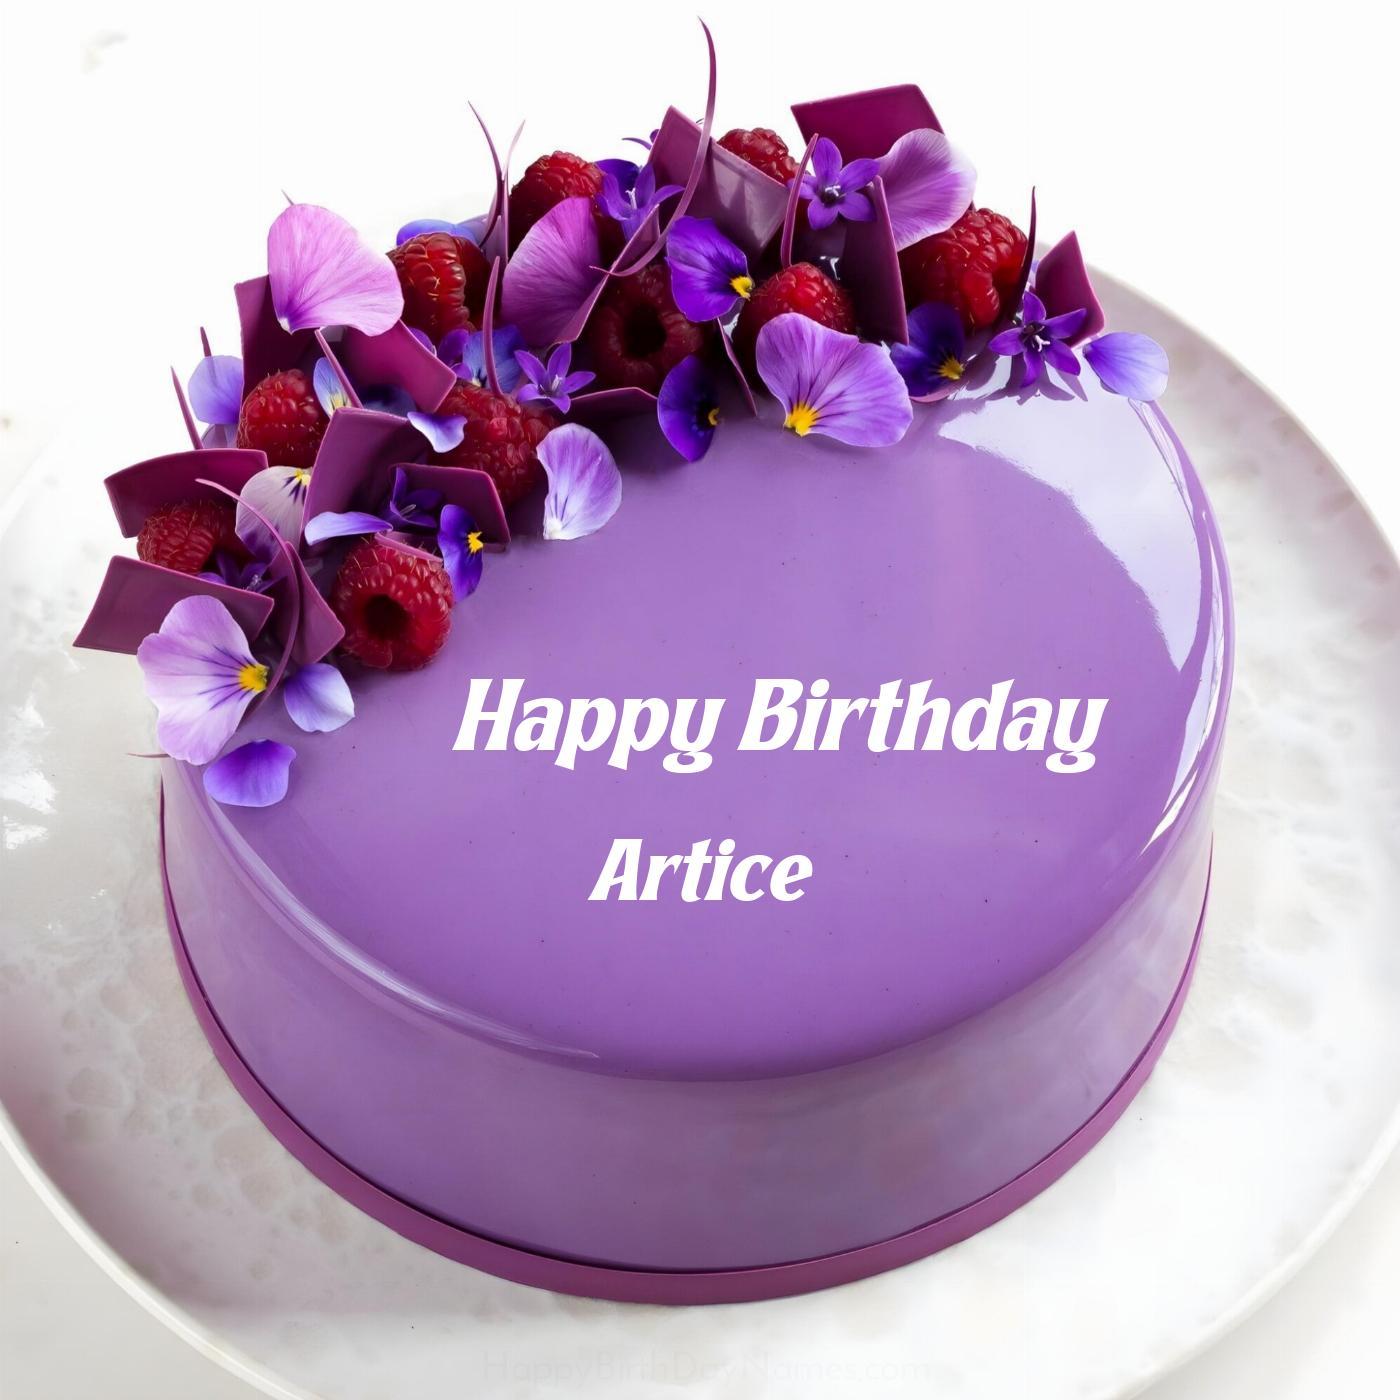 Happy Birthday Artice Violet Raspberry Cake